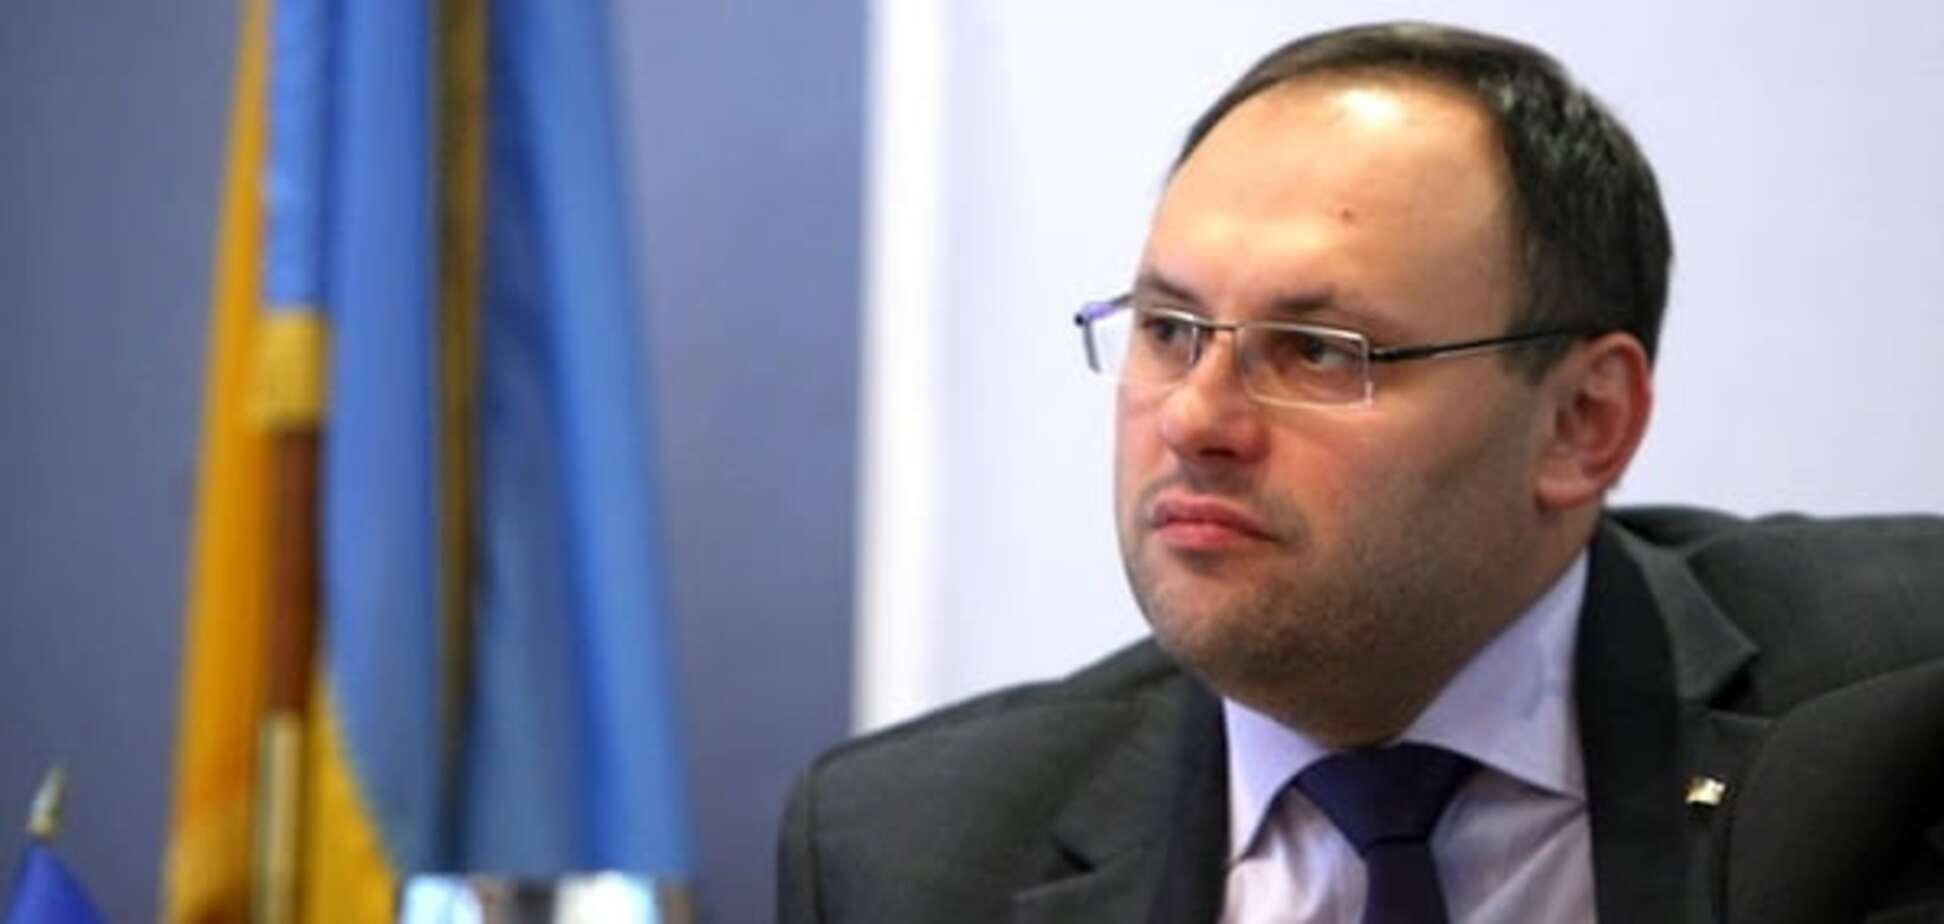 Пусть выдаст сообщников: ГПУ предложила Каськиву сделку со следствием 